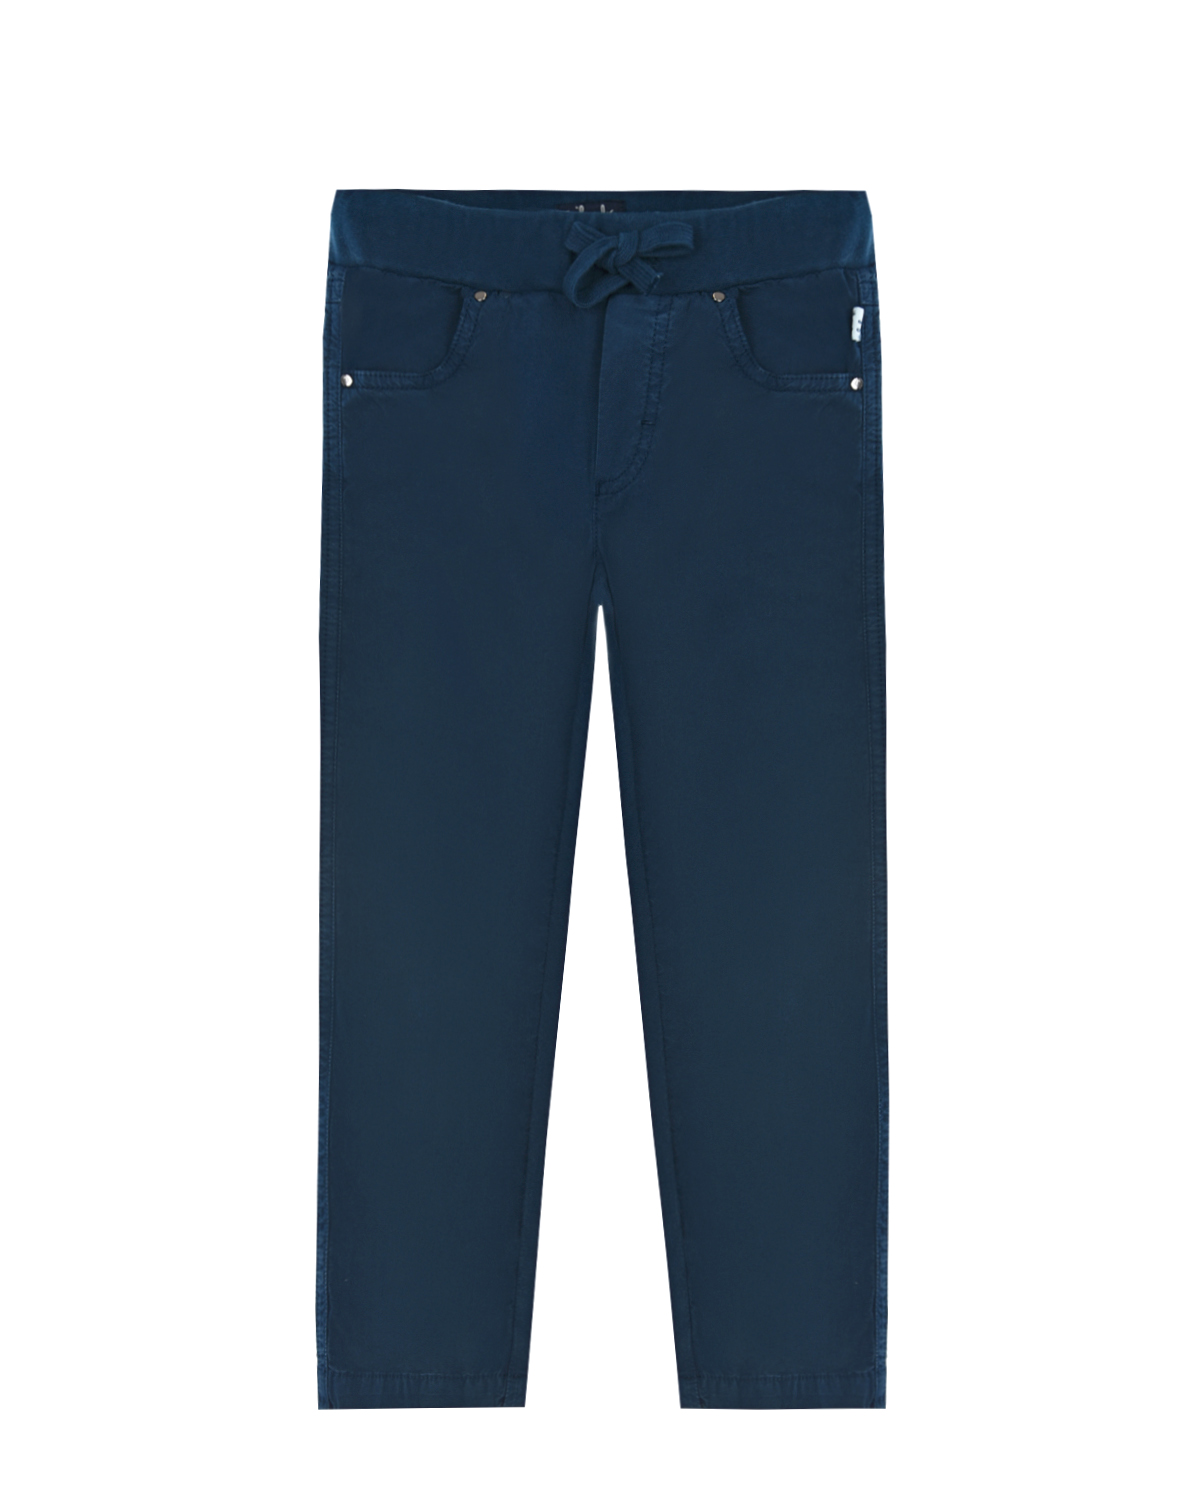 Купить Синие брюки из поплина IL Gufo детские, Синий, 97%хлопок+3%эластан, 100%хлопок, 95%хлопок+5%эластан